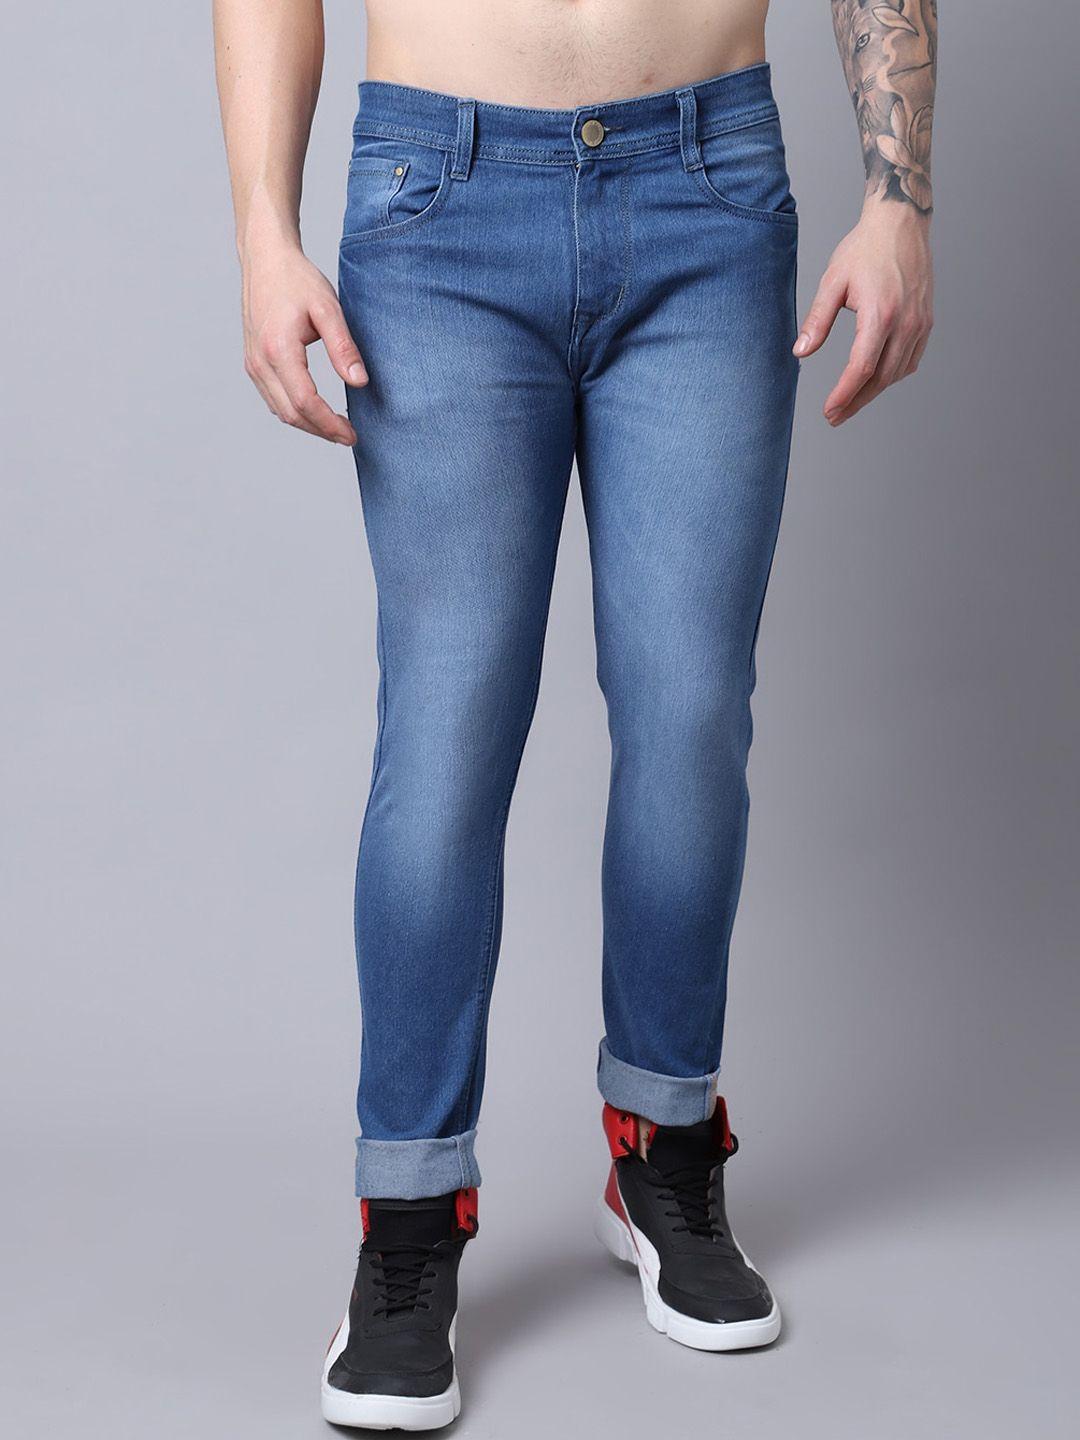 provogue-men-mid-rise-light-fade-cotton-jeans